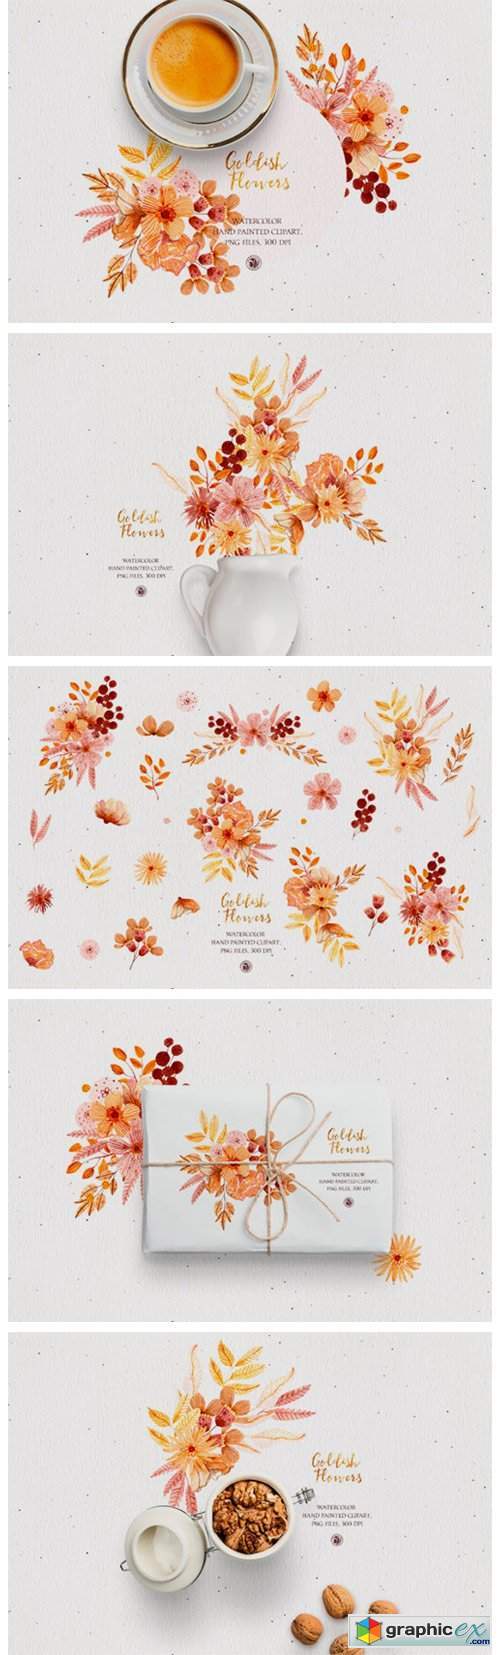 Goldish Flowers - Watercolor Floral Set